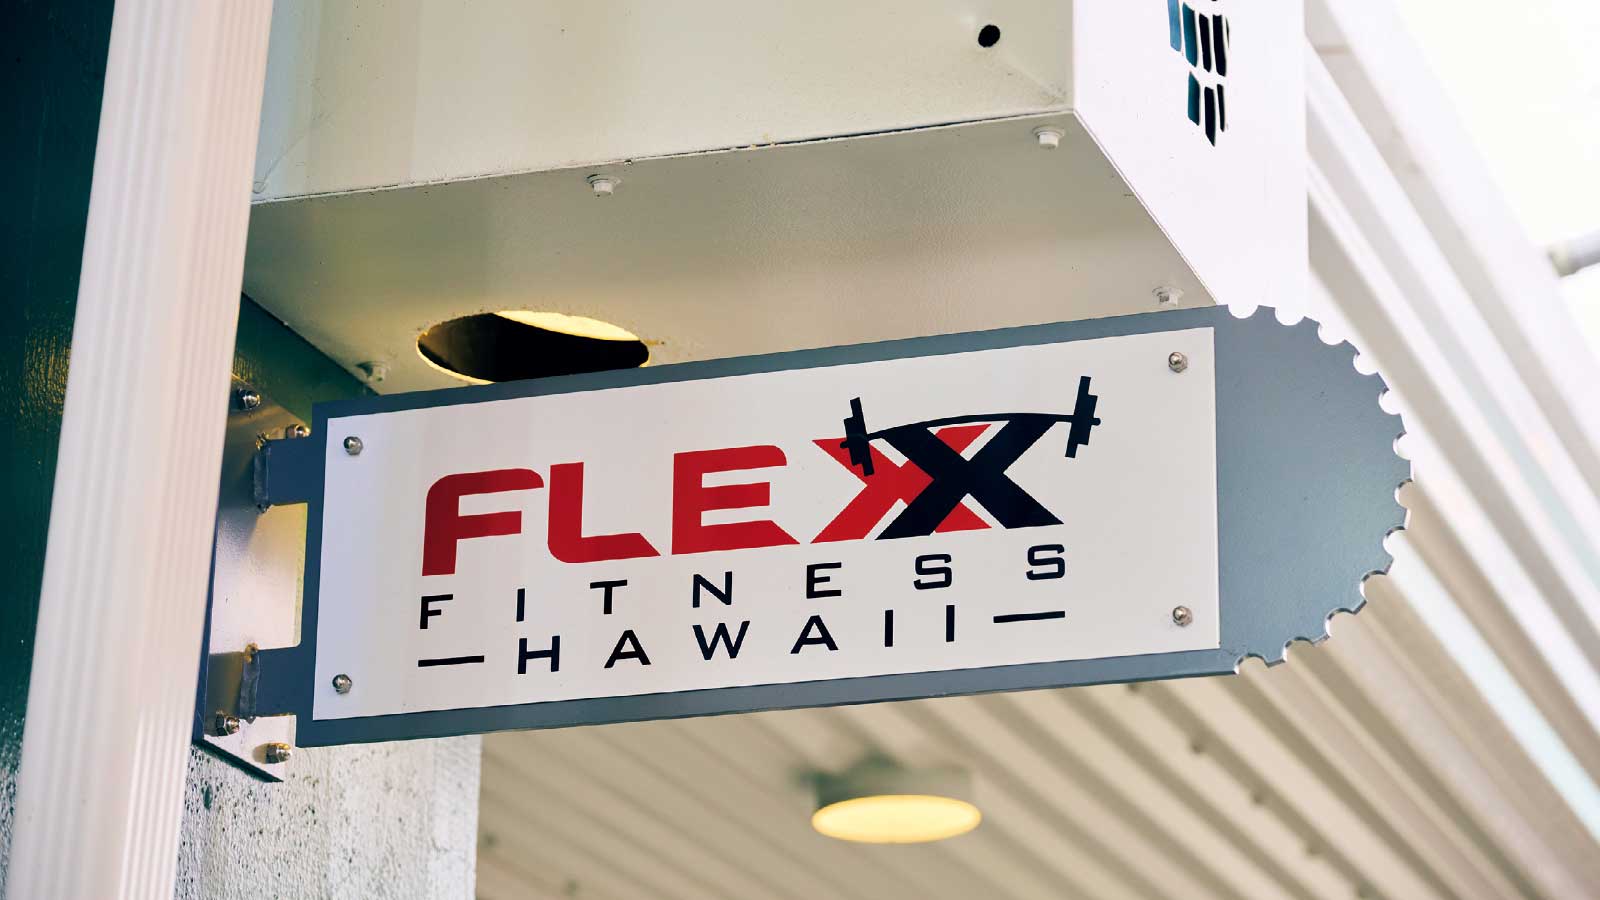 ハワイ ローカルジム Flexx Fitness Hawaii フレックス・フィットネス・ハワイ